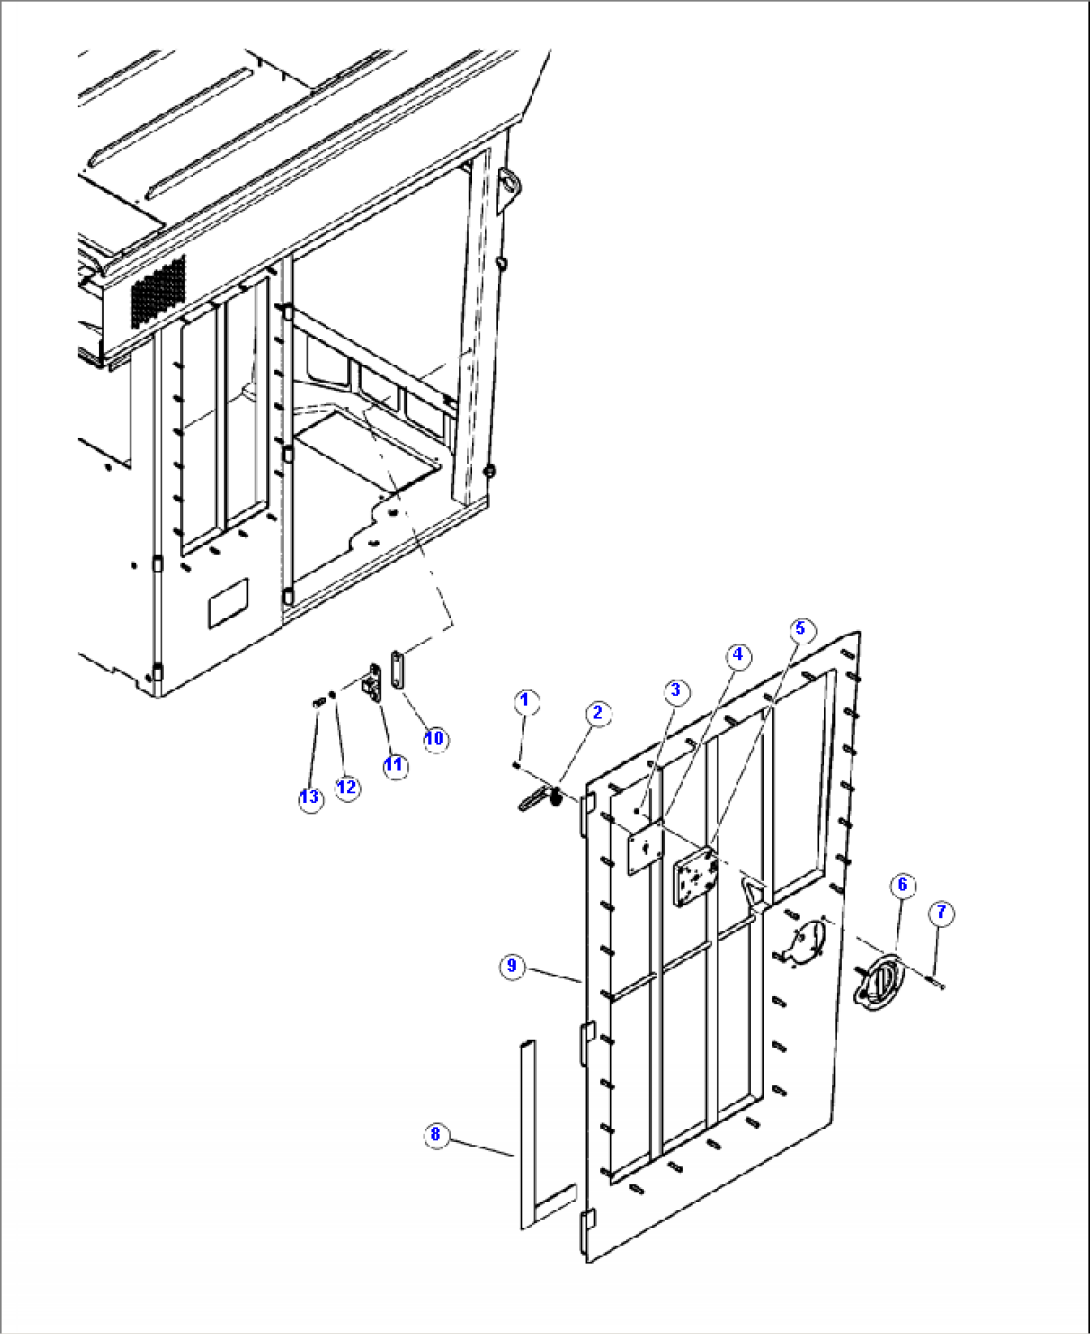 K0210-01A0 DOOR MOUNTING